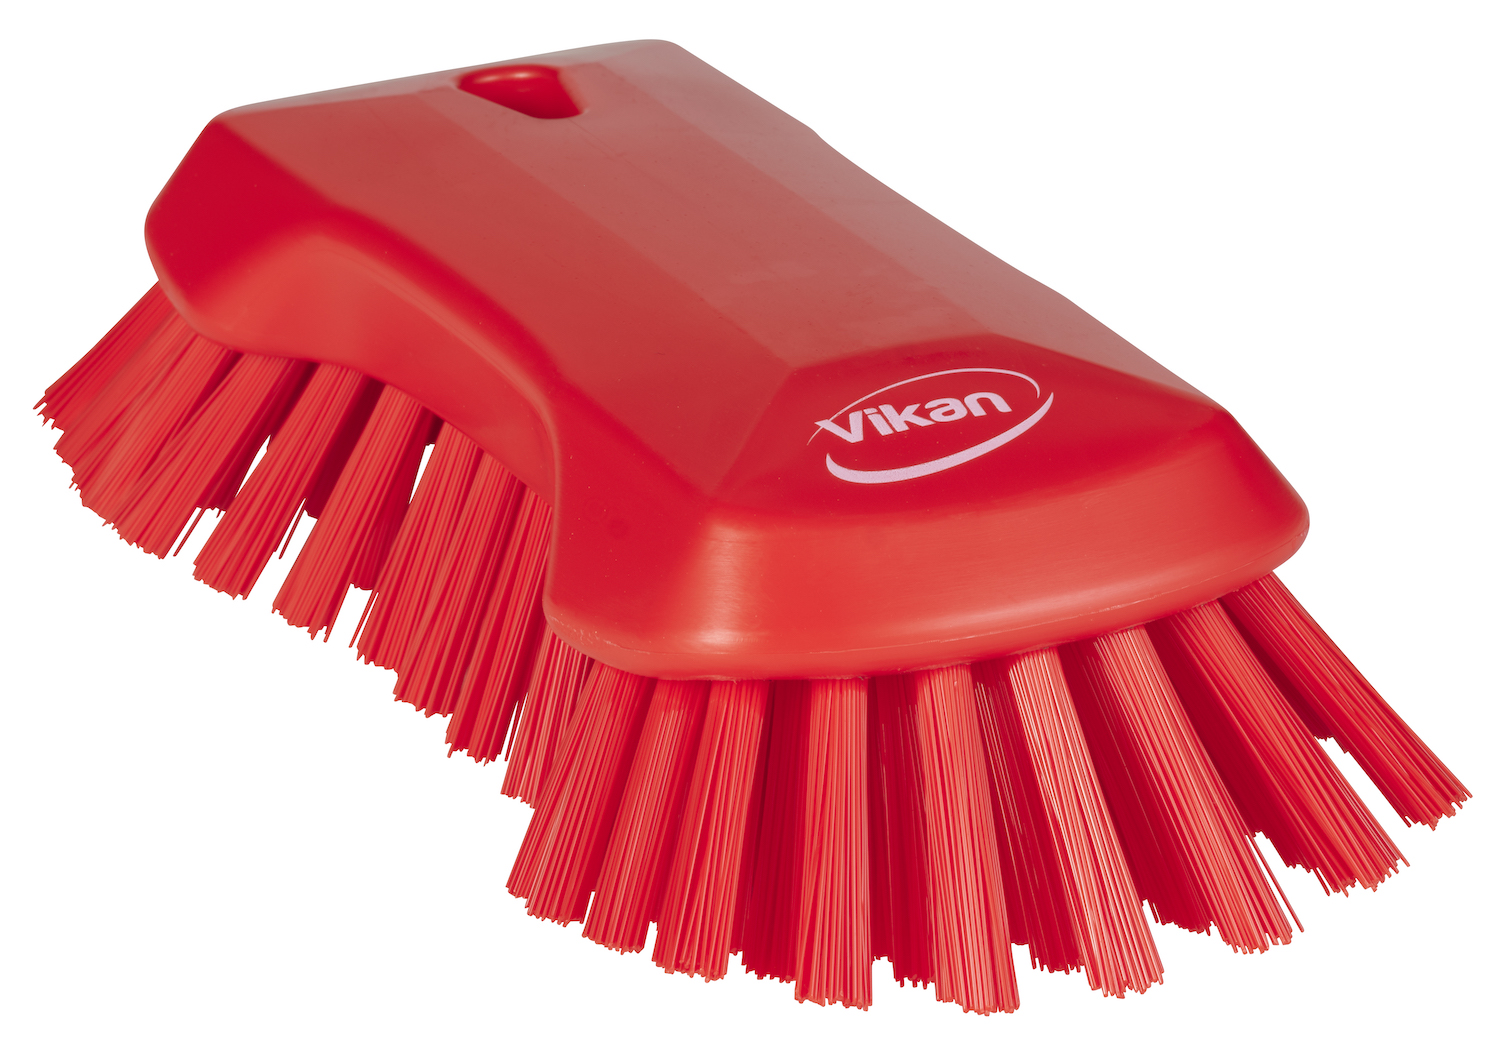 Vikan XL Hand Brush, 230 mm, Very hard, Red